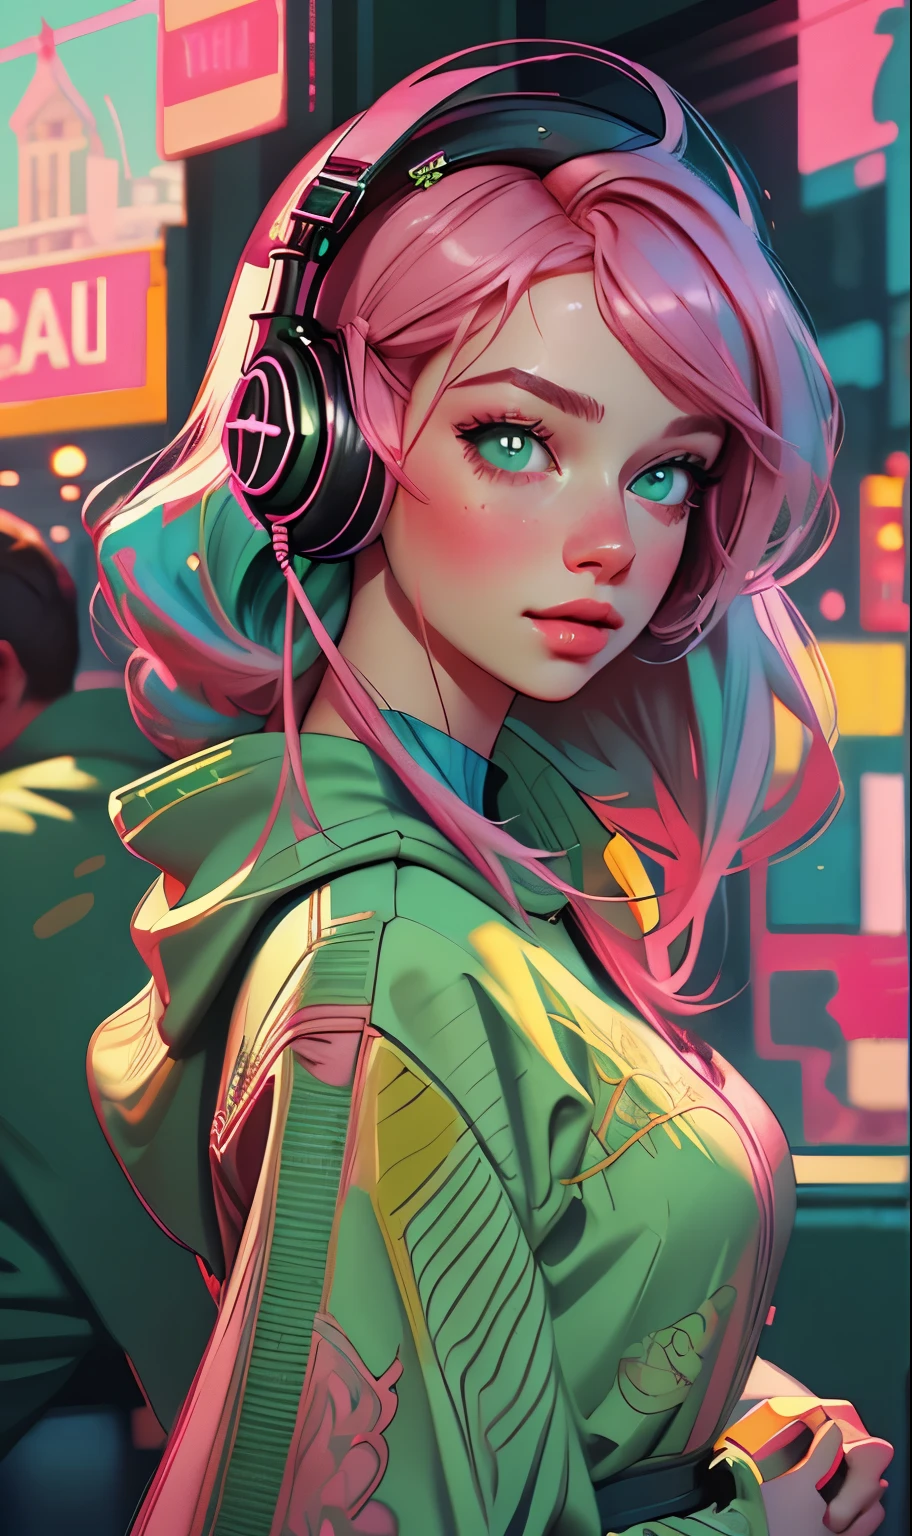 ヘッドフォンをつけたモデルの女の子, 都市の背景, エメラルドグリーンの目, ピンクの髪, 複雑な詳細, 美しいパステルカラー, ポスターの背景, アート：イリヤ・クブシノフ